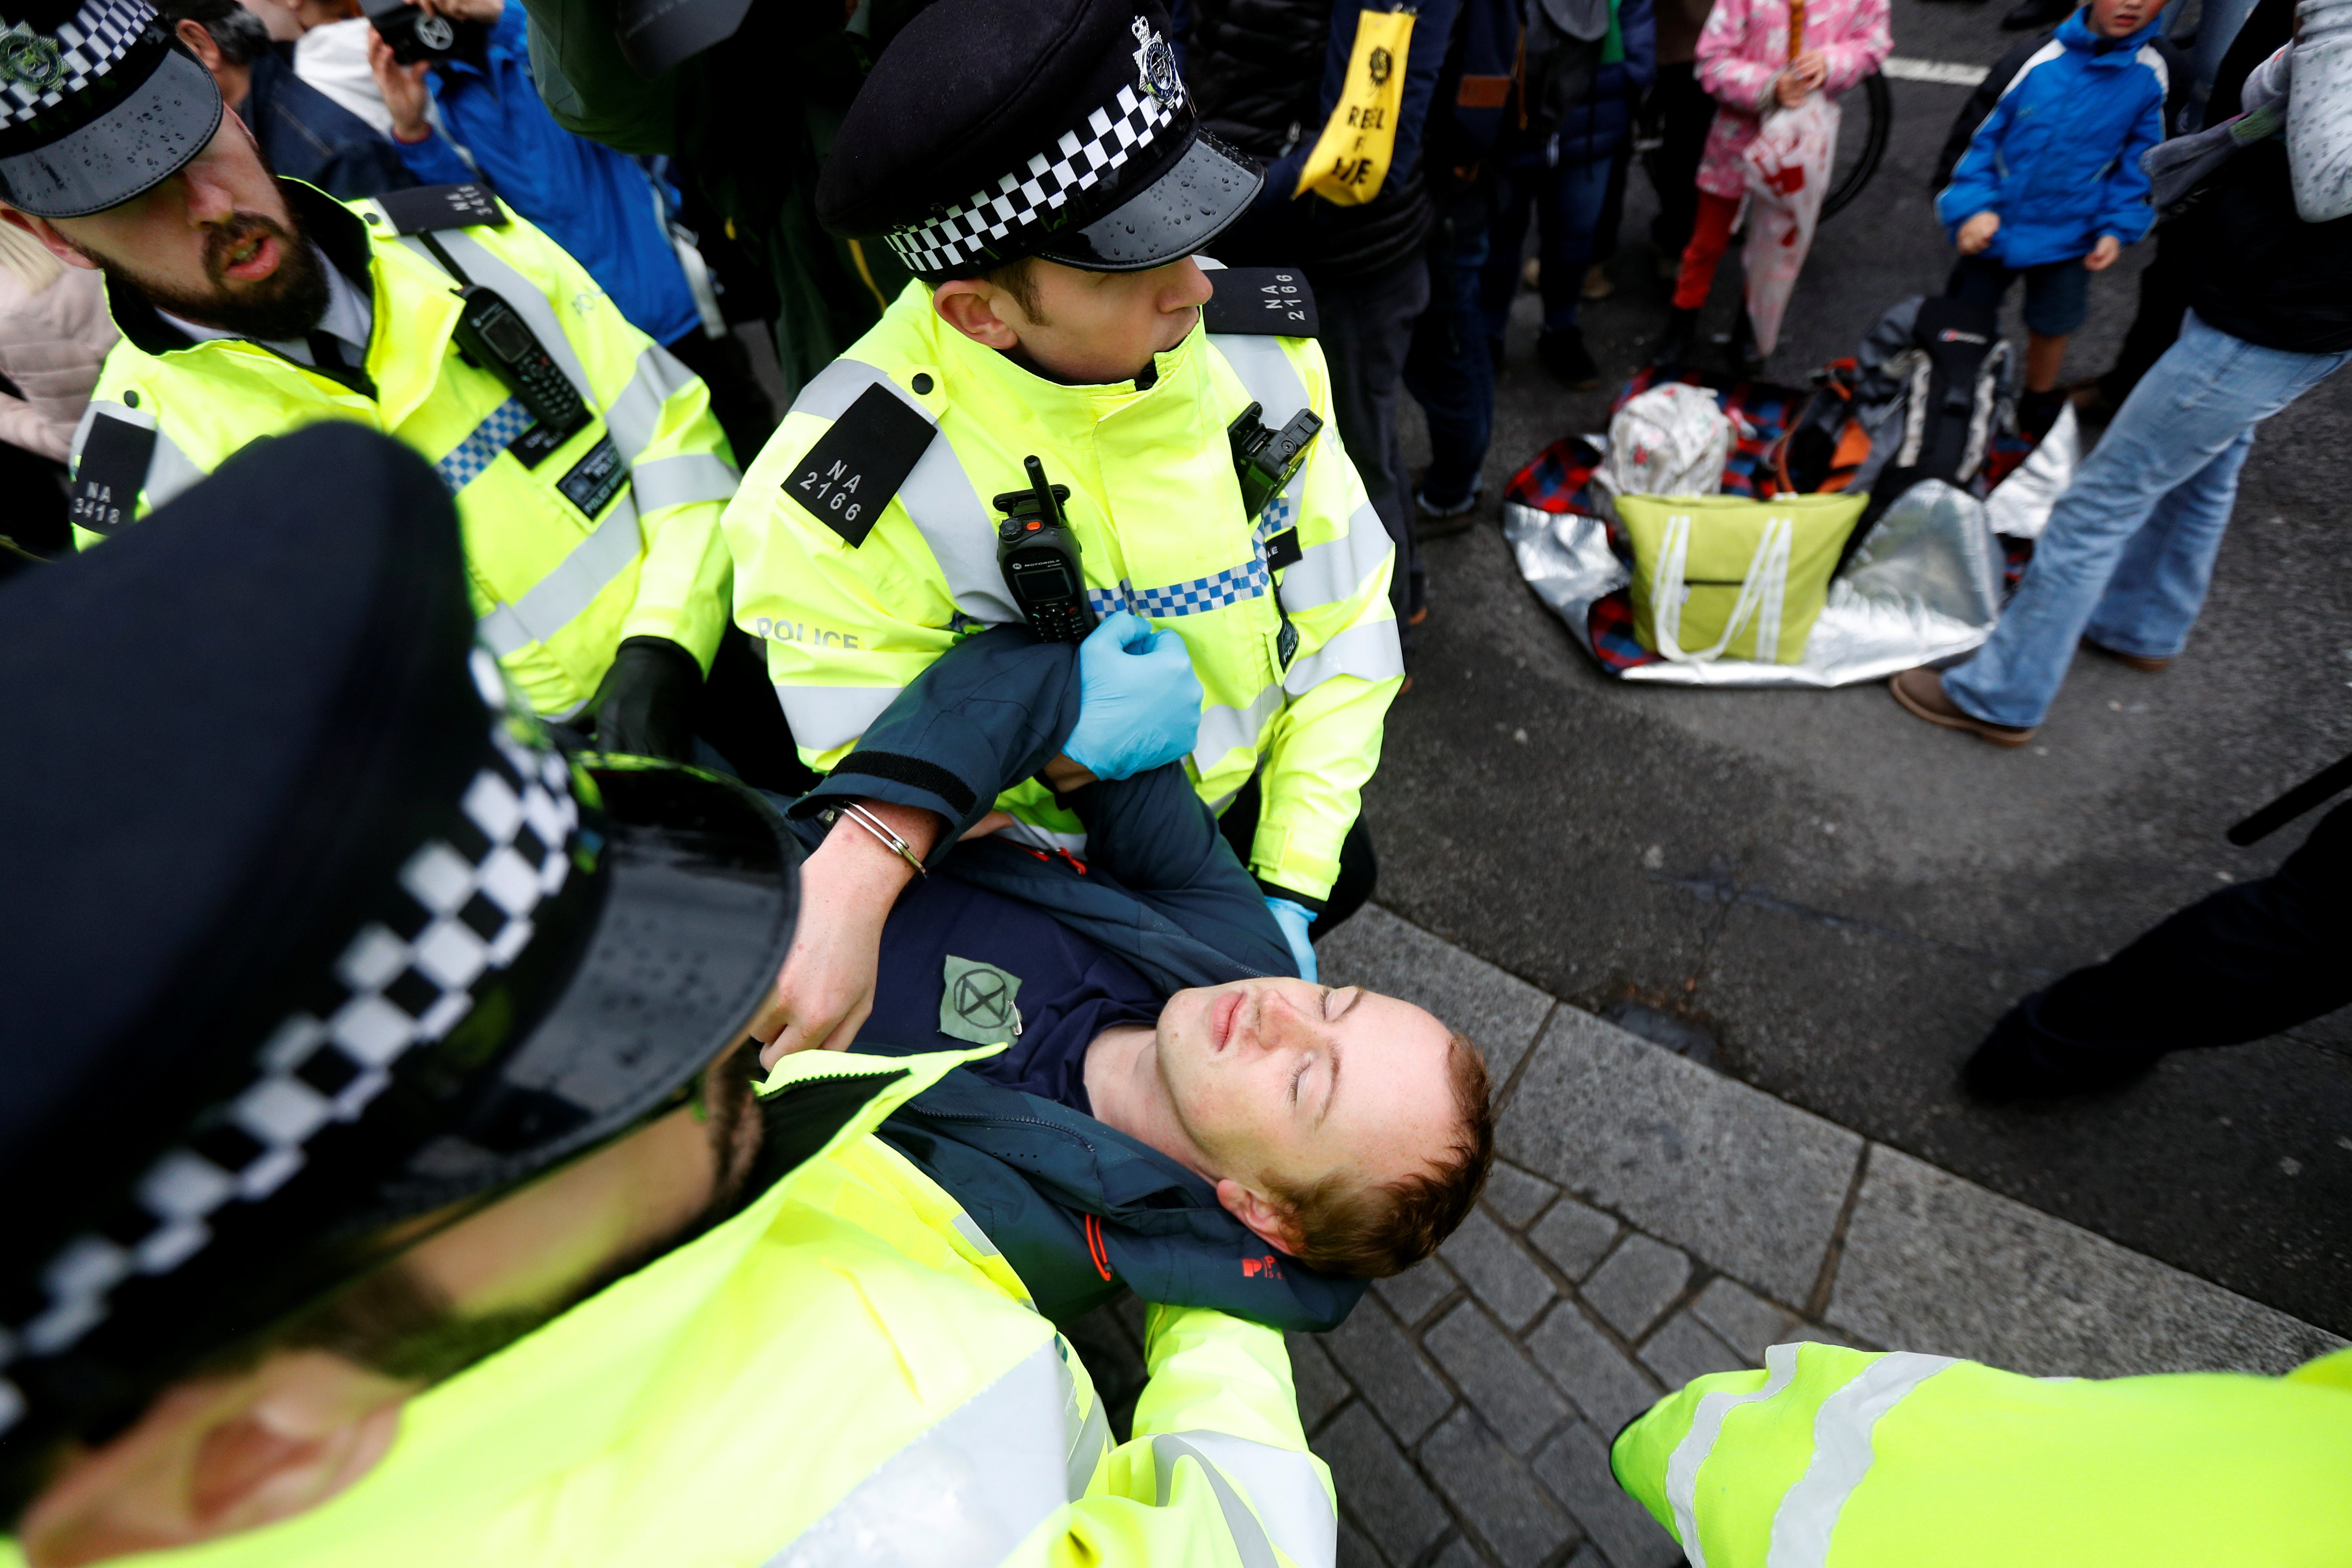 La police londonienne a annoncé lundi l'arrestation de 276 personnes participant à des actions de désobéissance civile organisées par le mouvement Extinction Rebellion, qui dénonce l'inaction des gouvernements face au dérèglement climatique. /Photo prise le 7 octobre 2019/REUTERS/Peter Nicholls